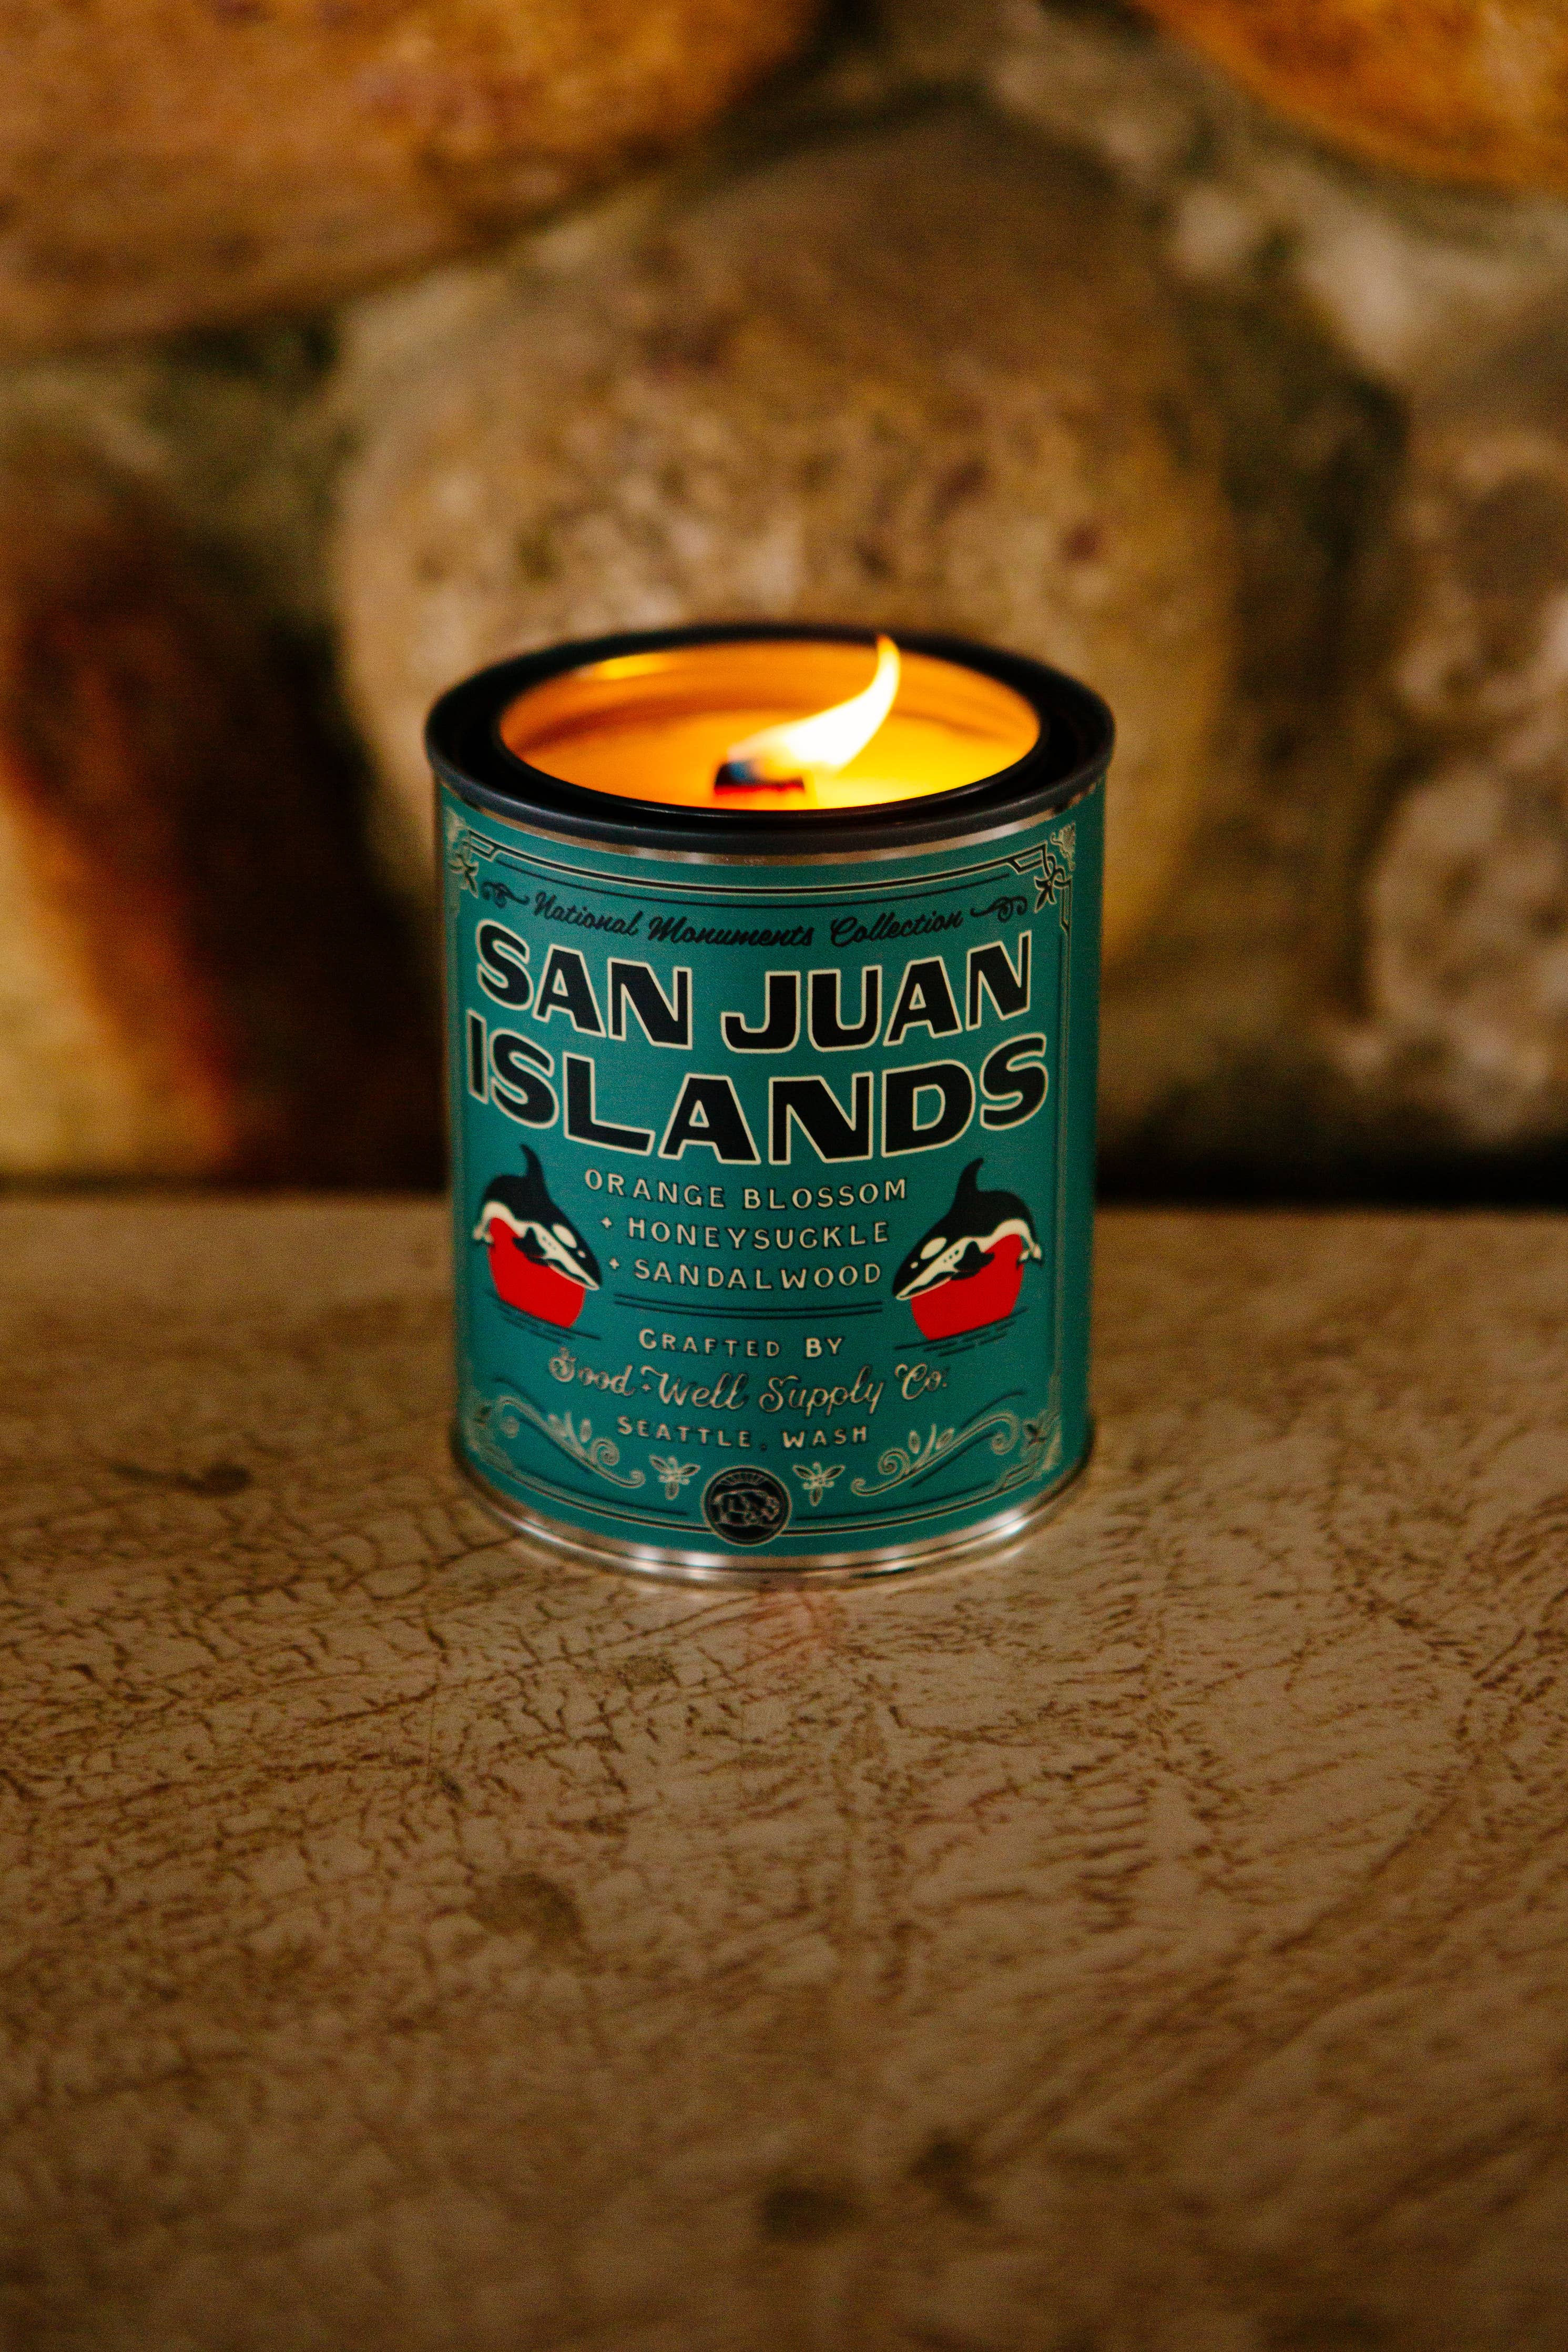 San Juan Islands National Park Candle